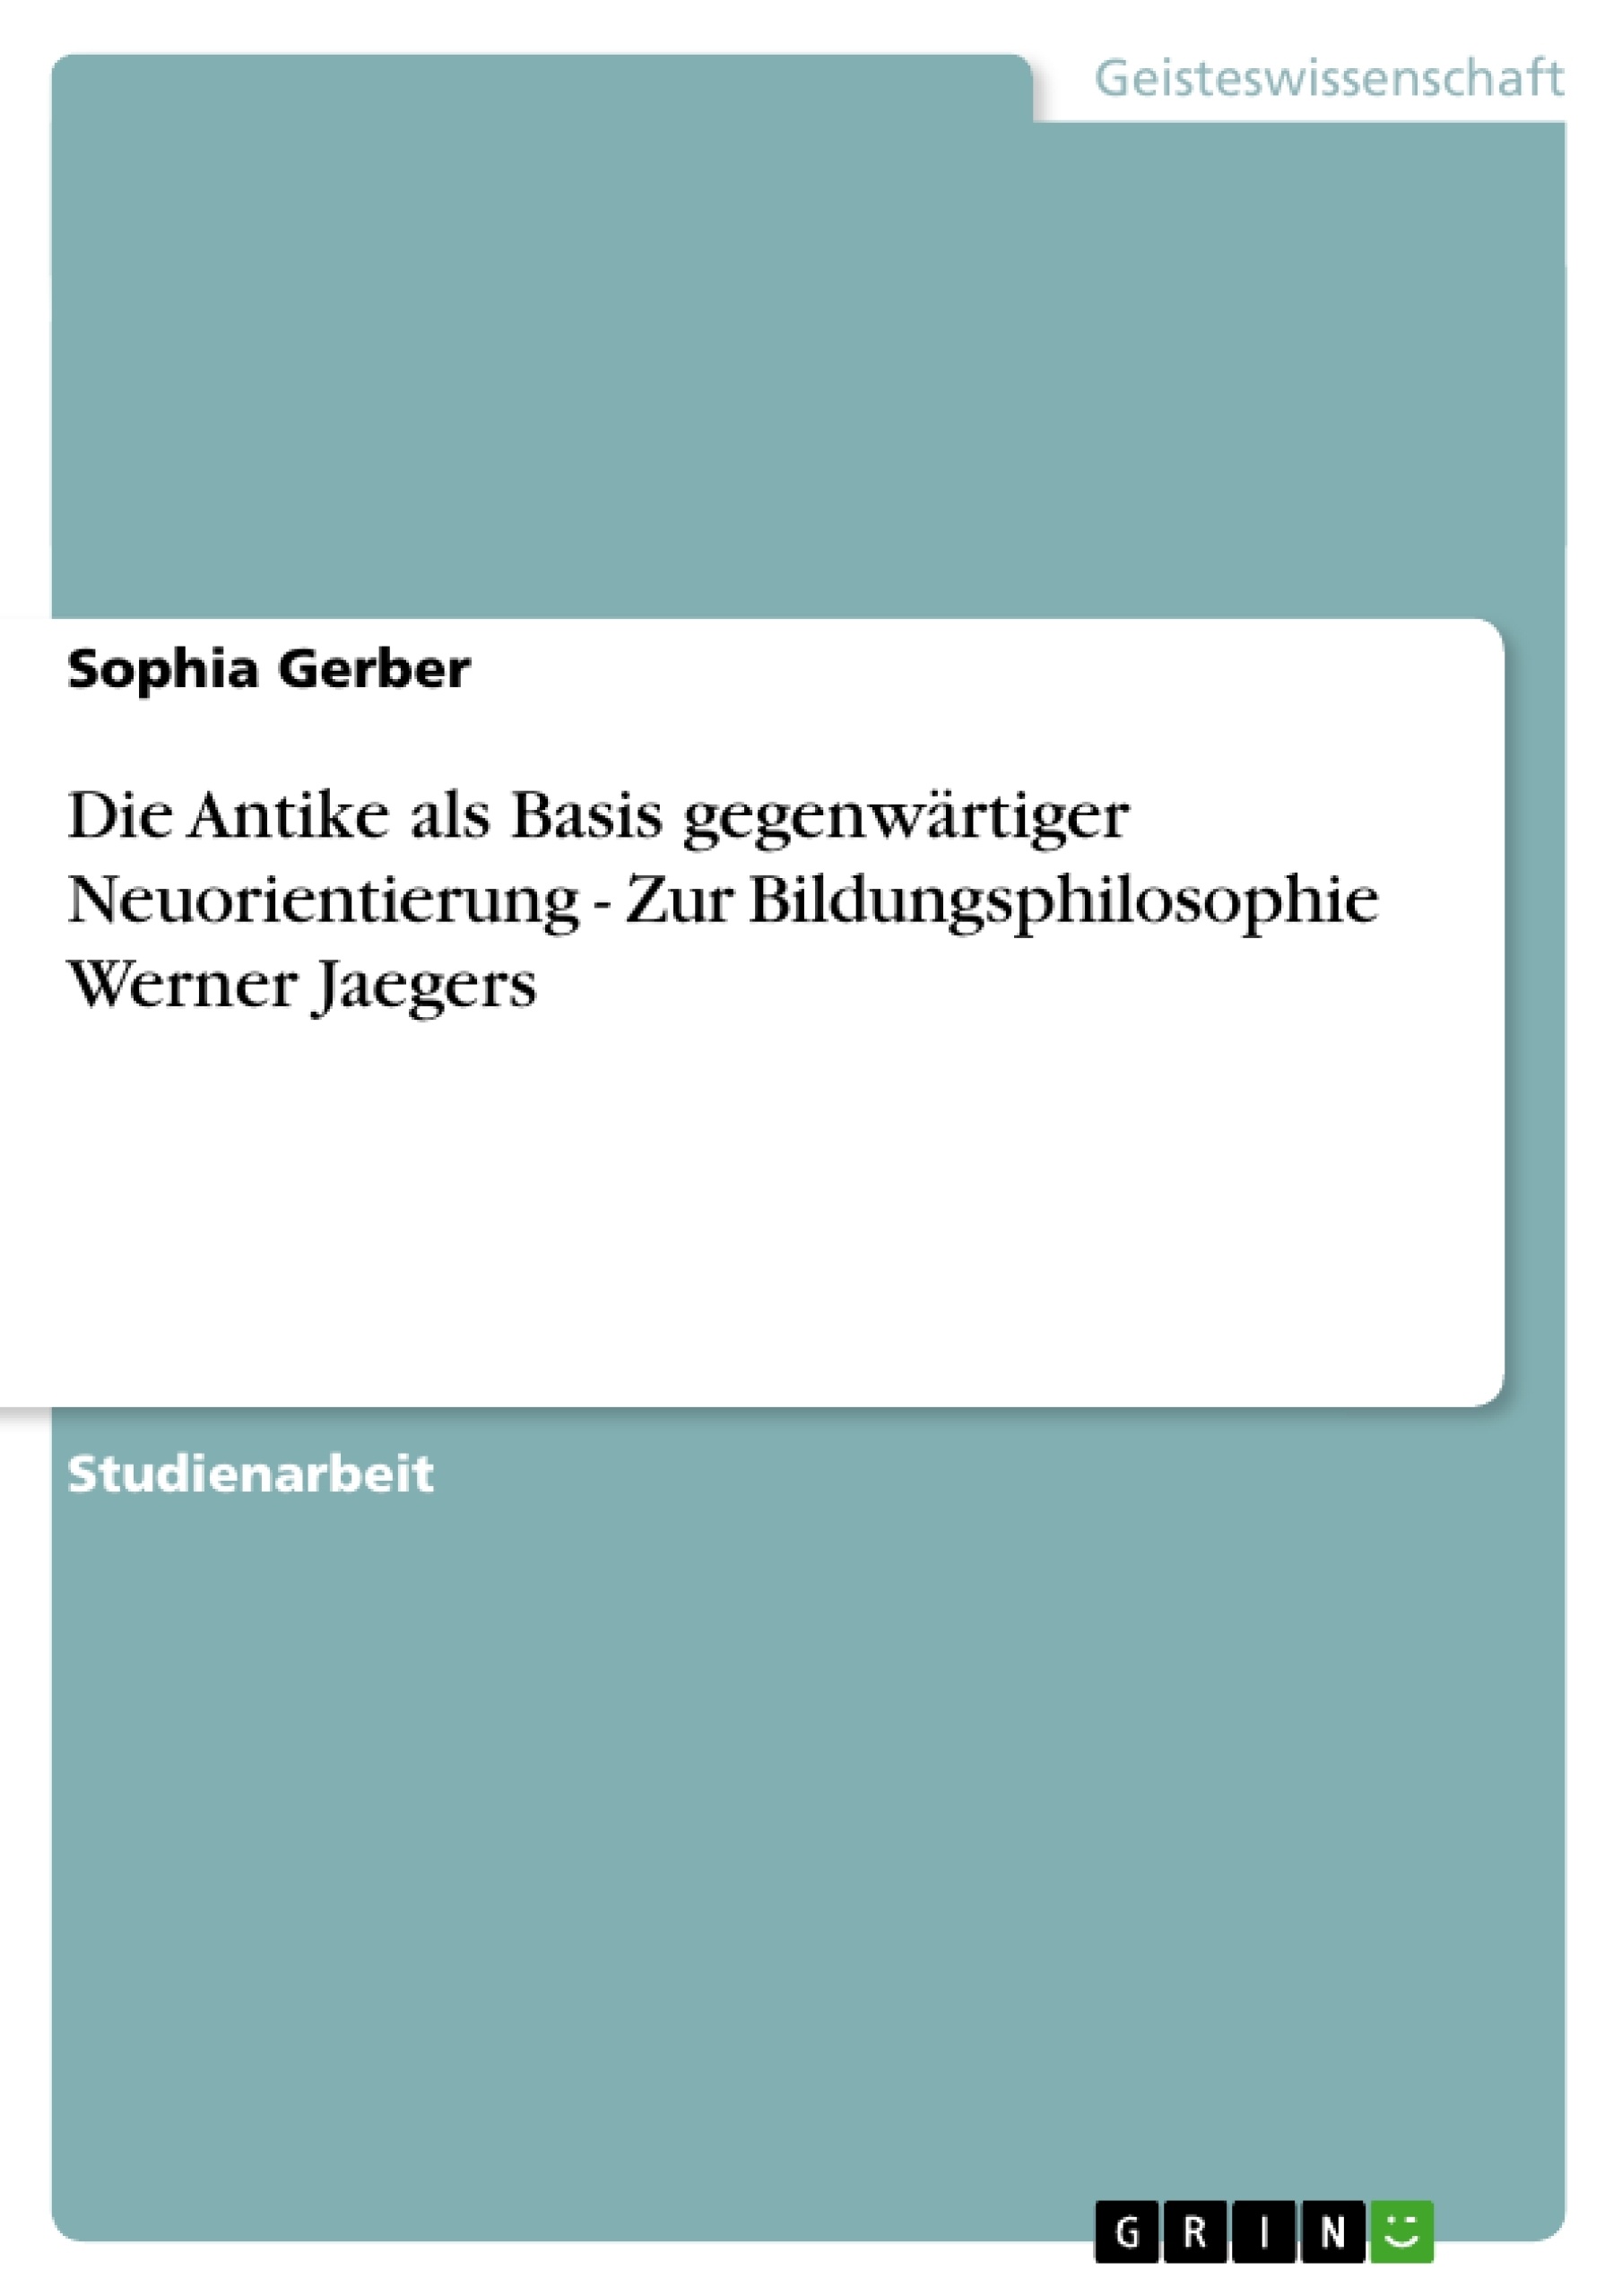 Title: Die Antike als Basis gegenwärtiger Neuorientierung - Zur Bildungsphilosophie Werner Jaegers